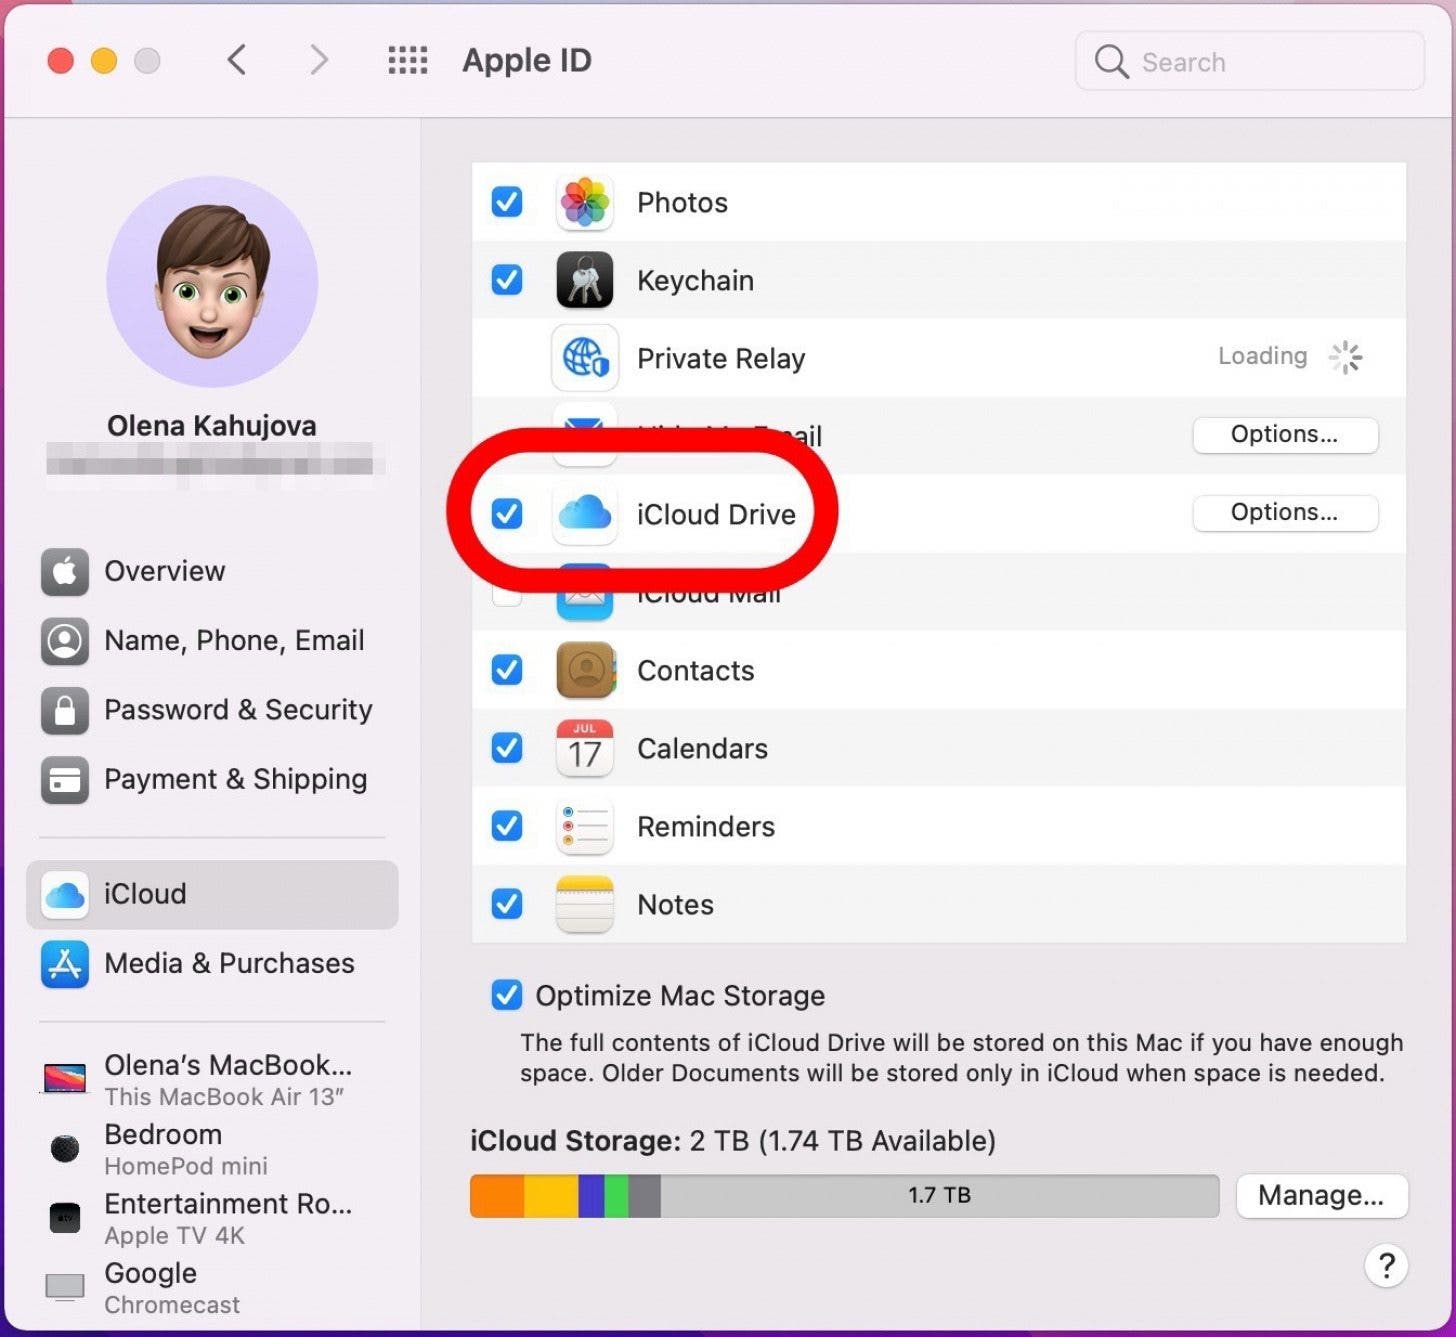 Haga clic para marcar la casilla - copia de seguridad macbook pro, copia de seguridad de la computadora en icloud